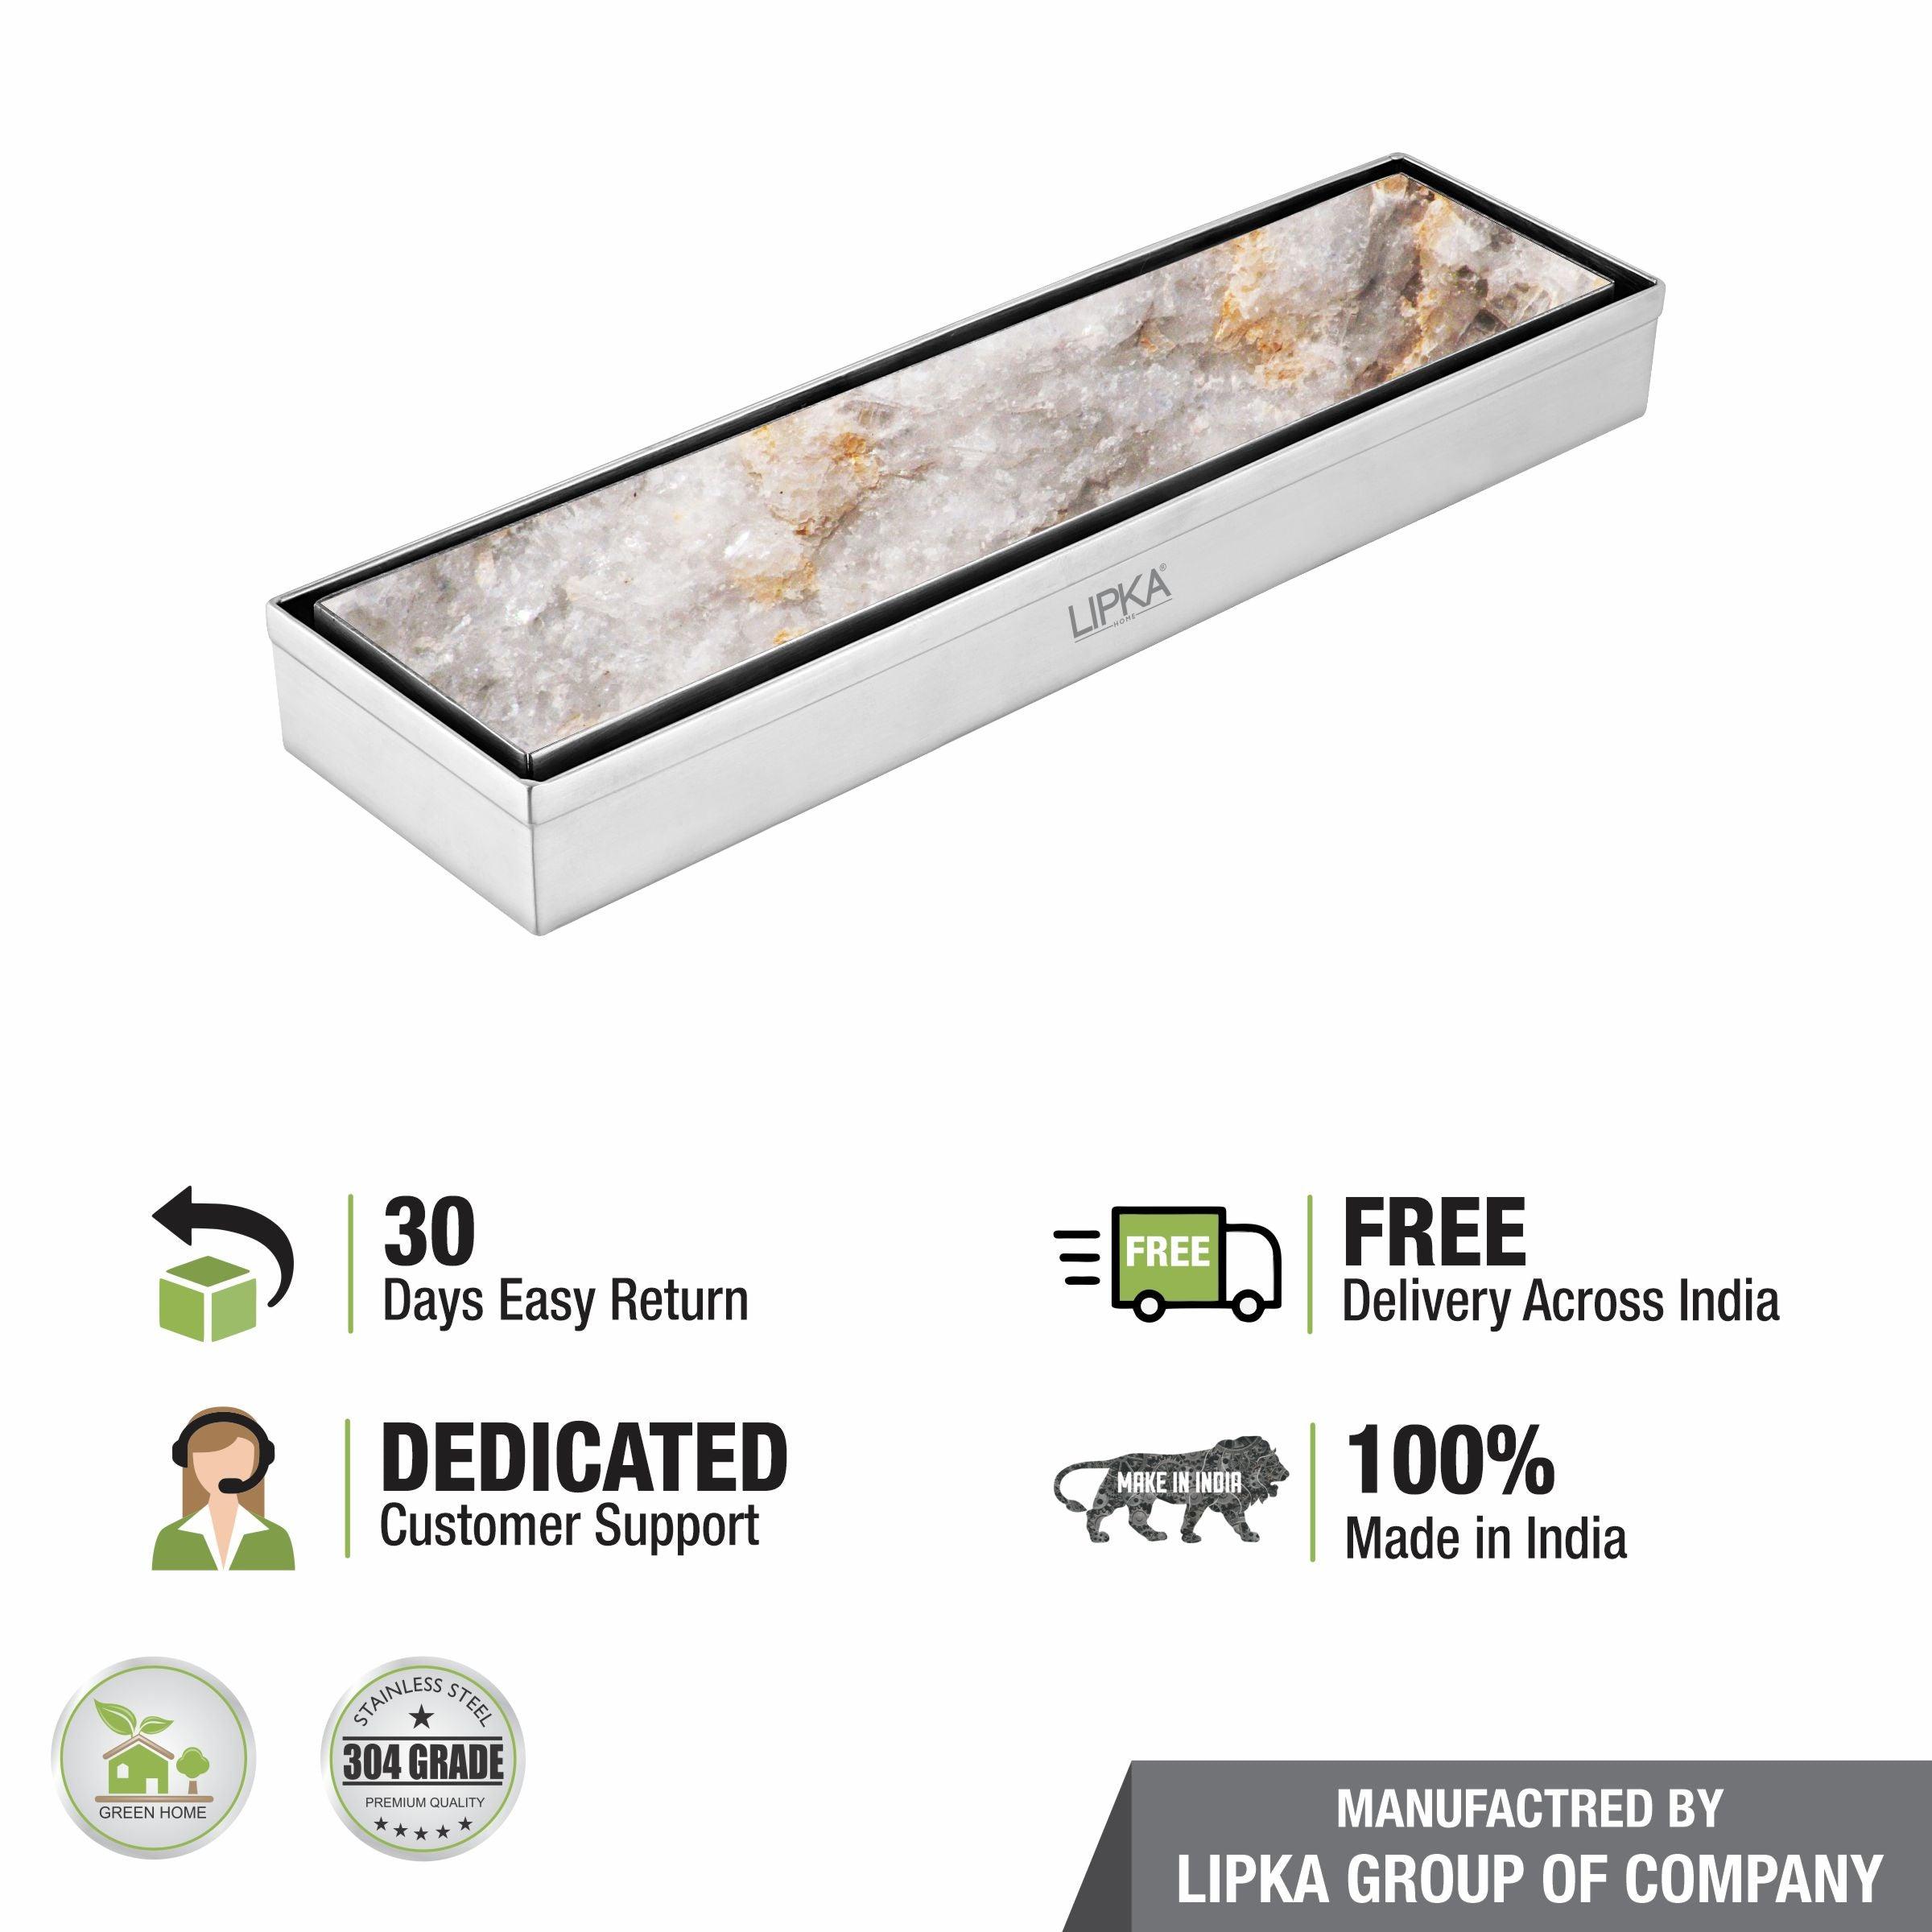 Tile Insert Shower Drain Channel (18 x 3 Inches) - LIPKA - Lipka Home